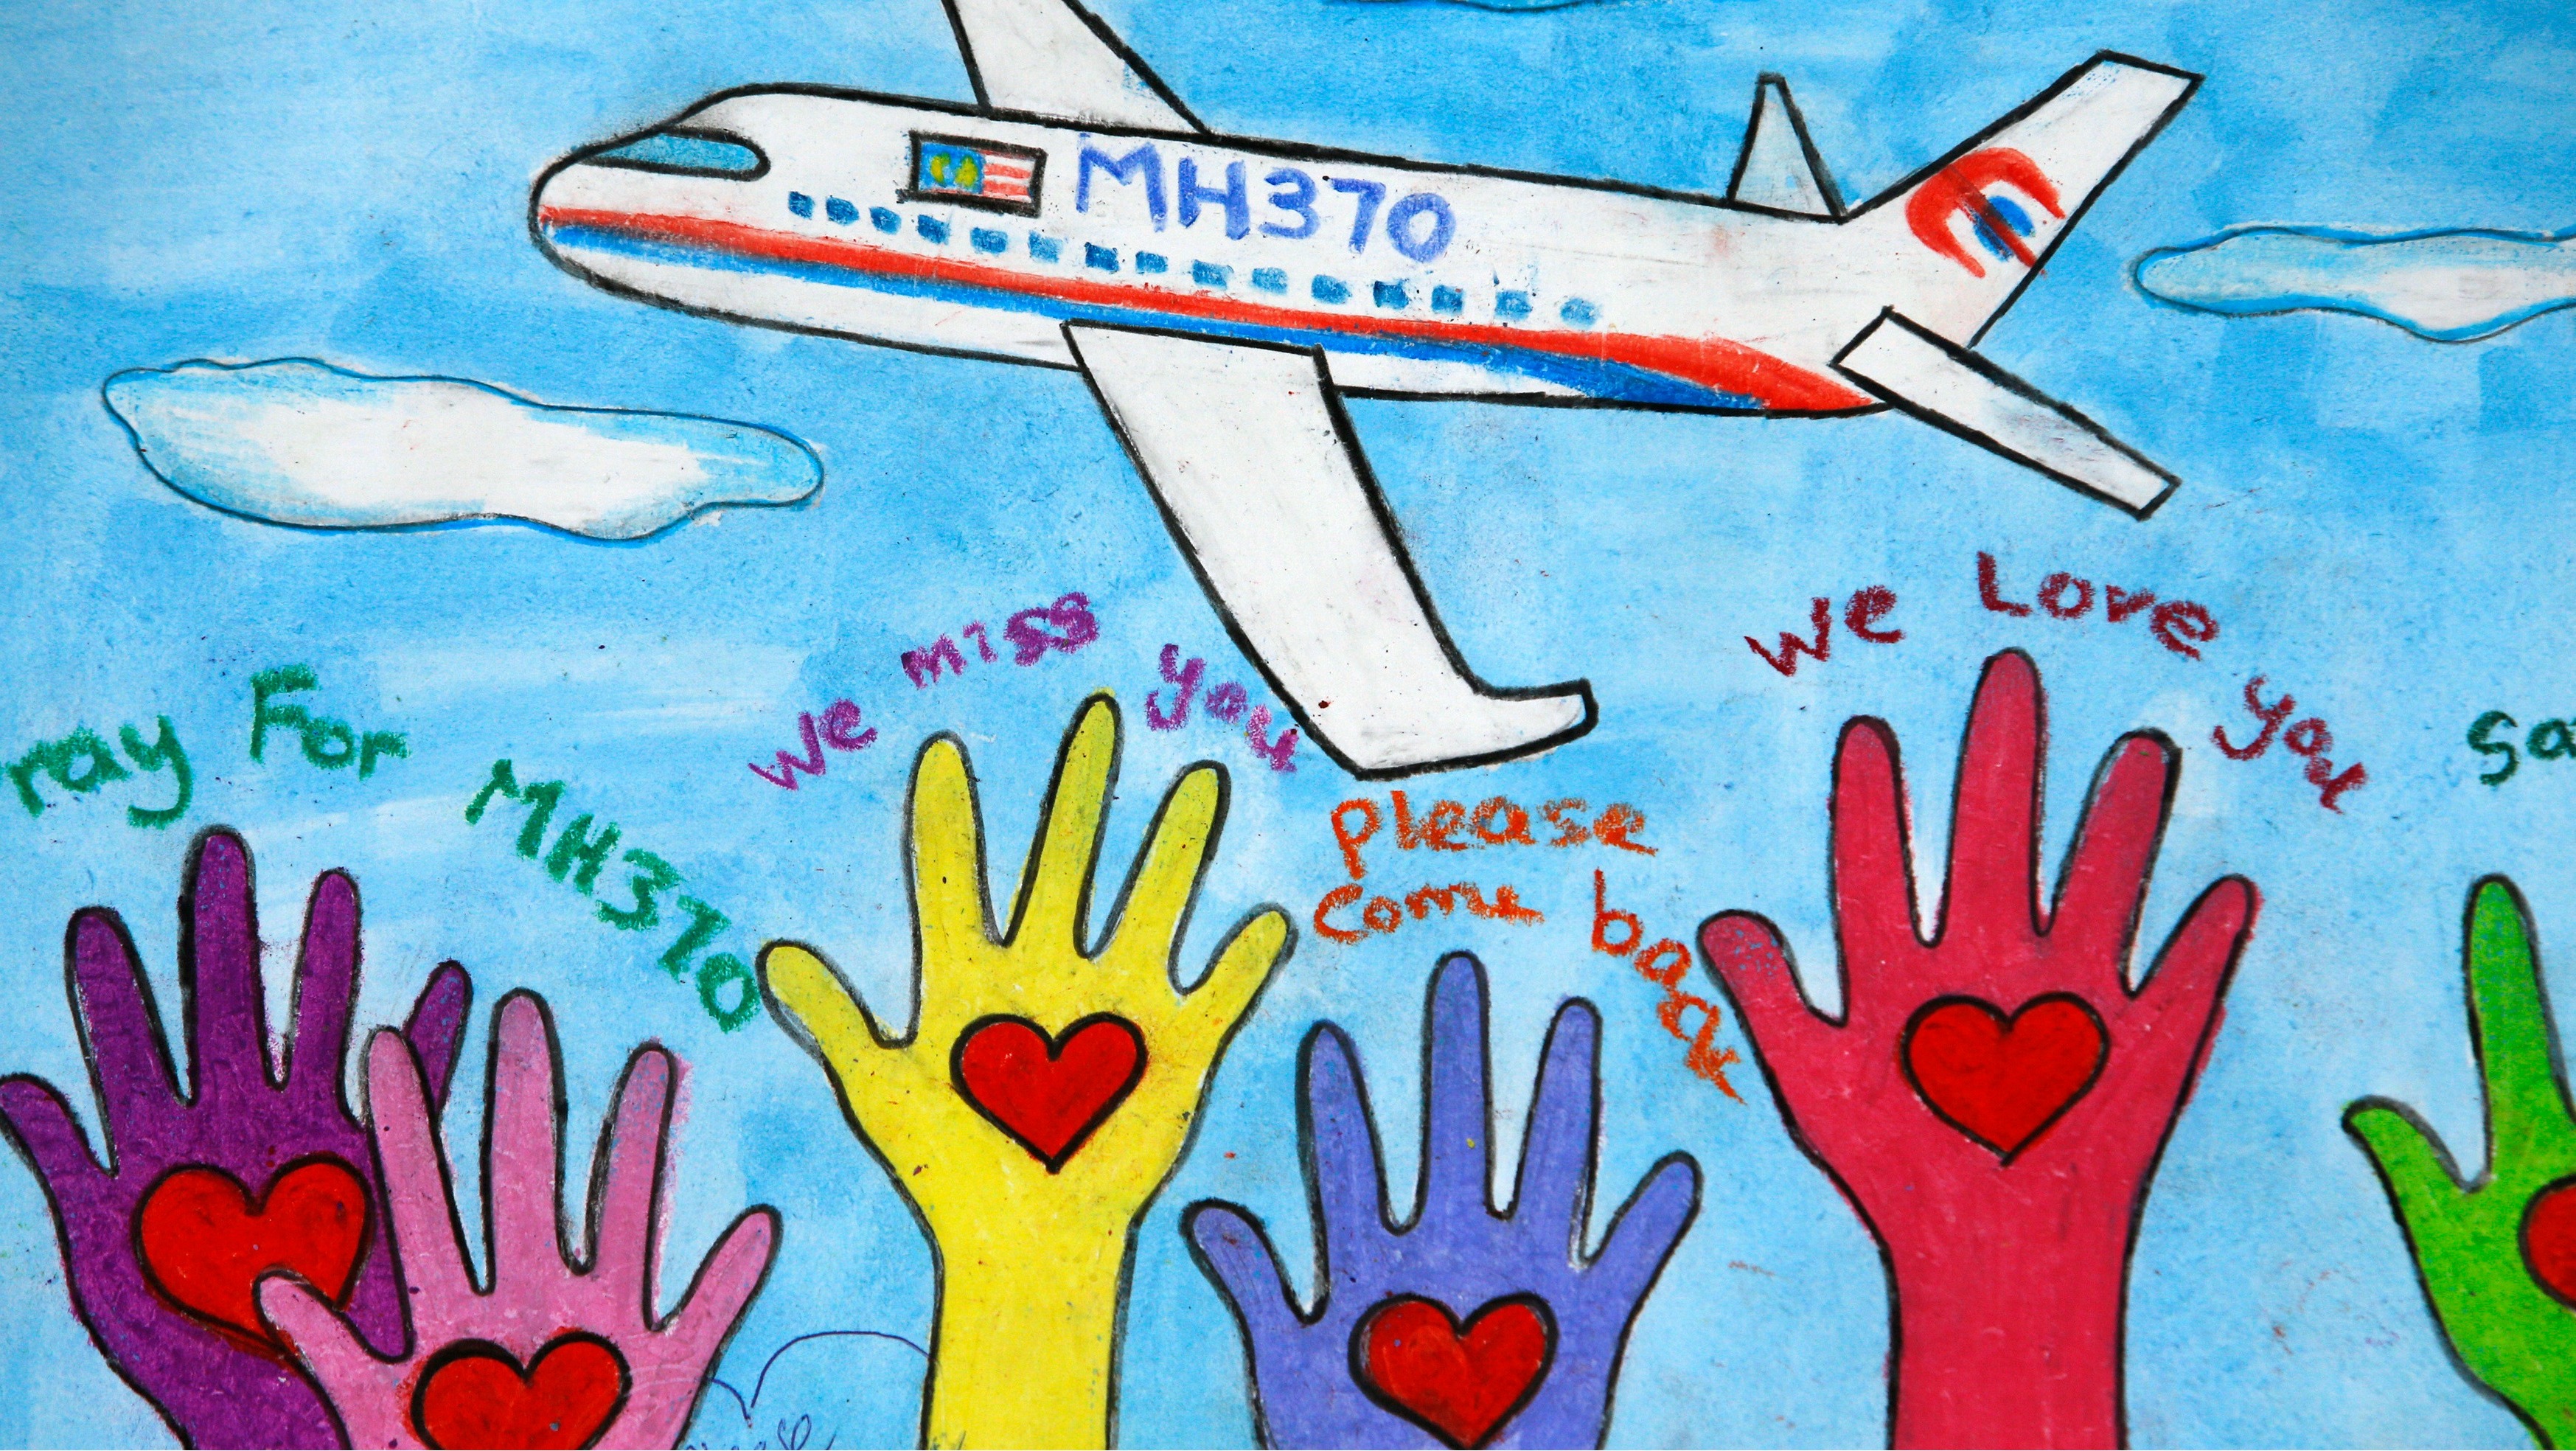 MH370: Hãy cùng chiêm ngưỡng hình ảnh đầy bí ẩn của MH370 - chiếc máy bay biến mất đầy nghi vấn nhất trong lịch sử hàng không thế giới. Nếu bạn là tín đồ của các câu chuyện bí ẩn và muốn tìm hiểu thêm về vụ việc này, đây chính là cơ hội tuyệt vời.